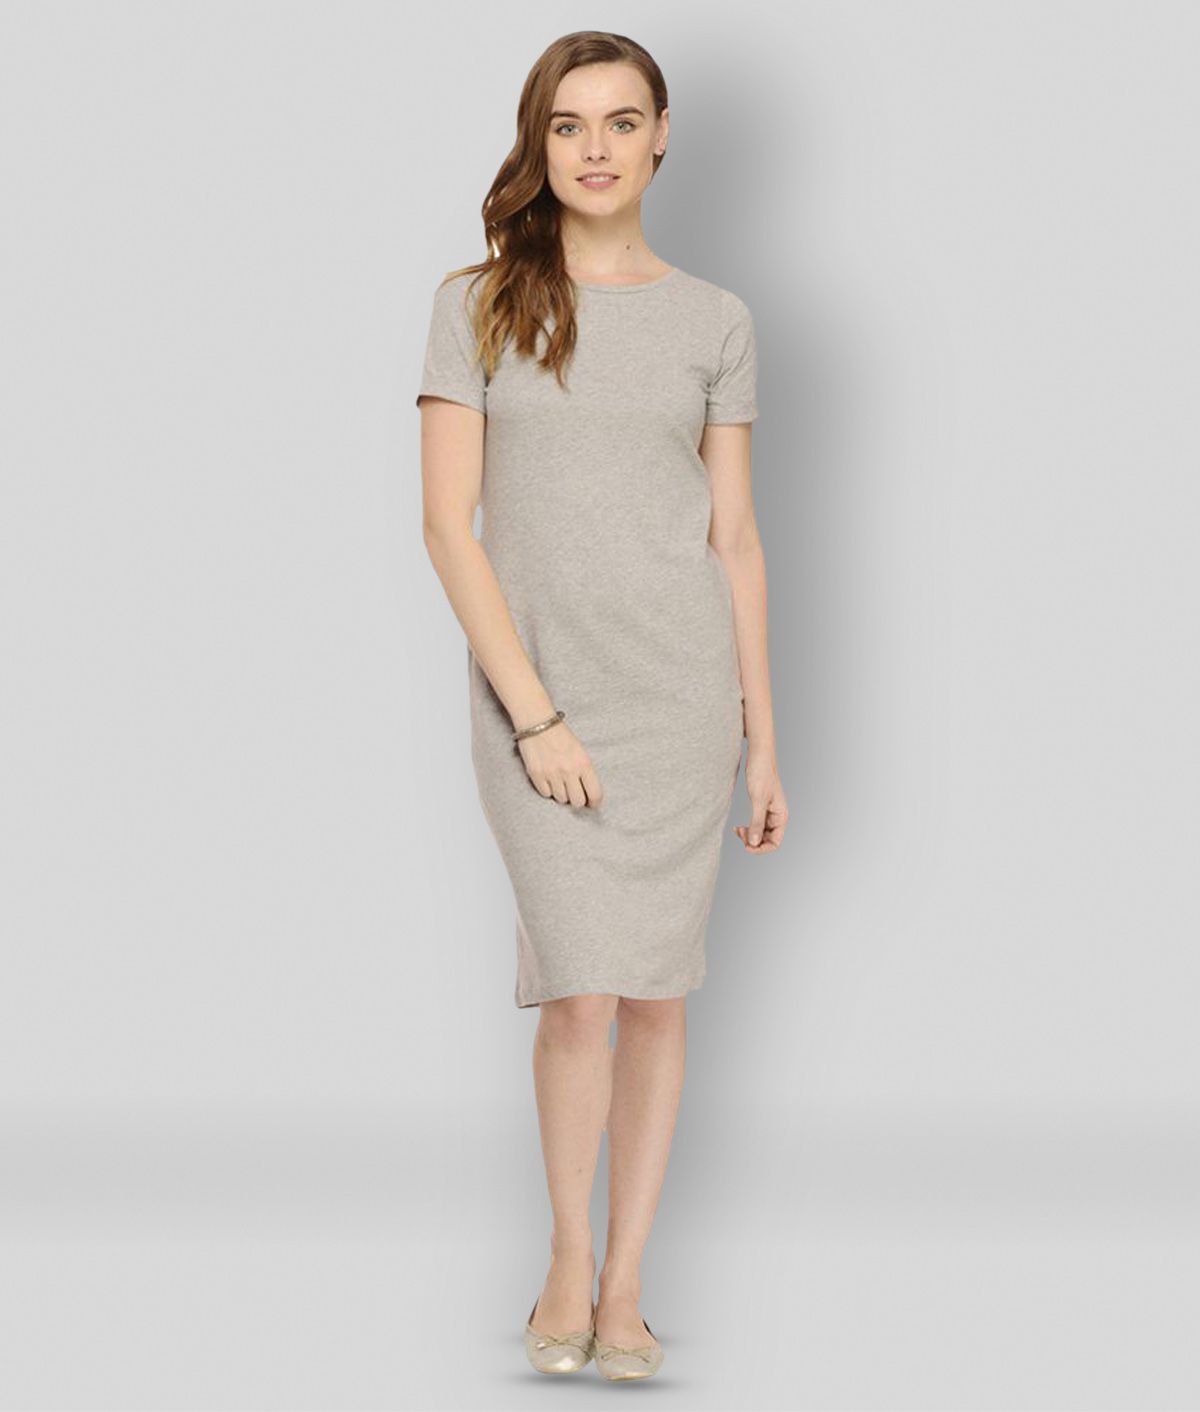     			Rigo - Light Grey Cotton Blend Women's T-shirt Dress ( Pack of 1 )